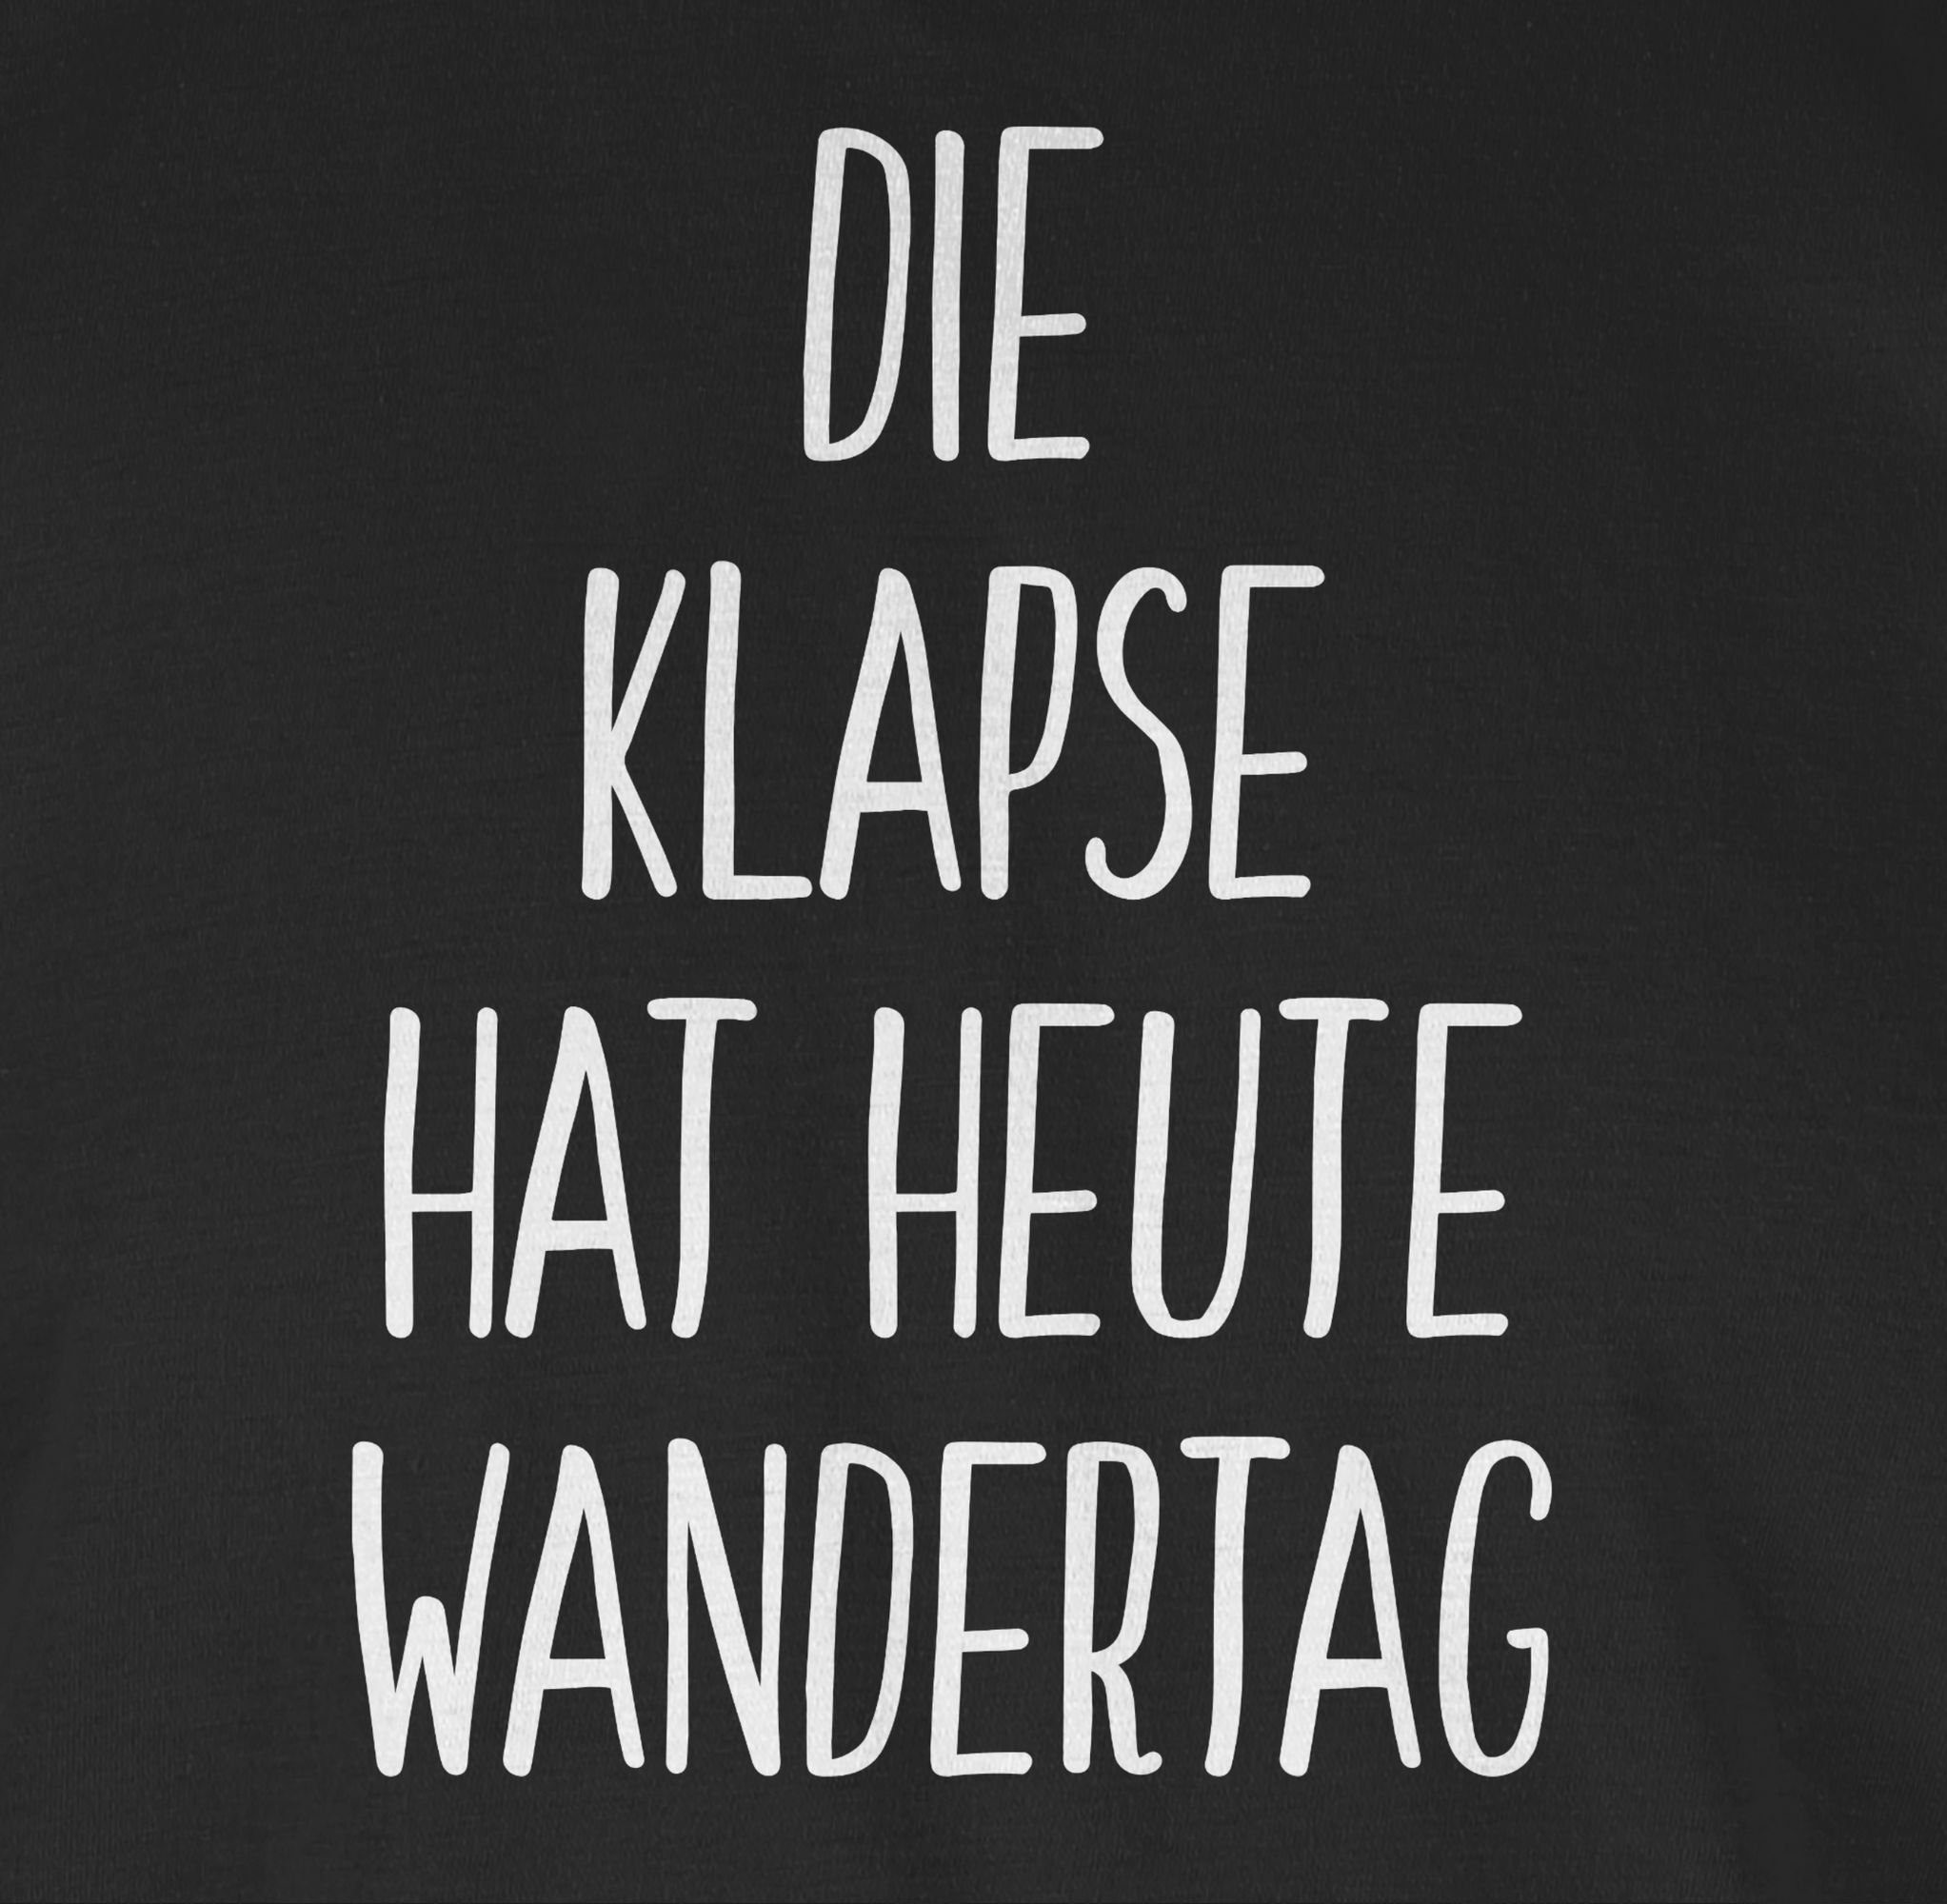 Shirtracer T-Shirt Die Klapse Statement hat 01 heute Wandertag mit Spruch Sprüche Schwarz